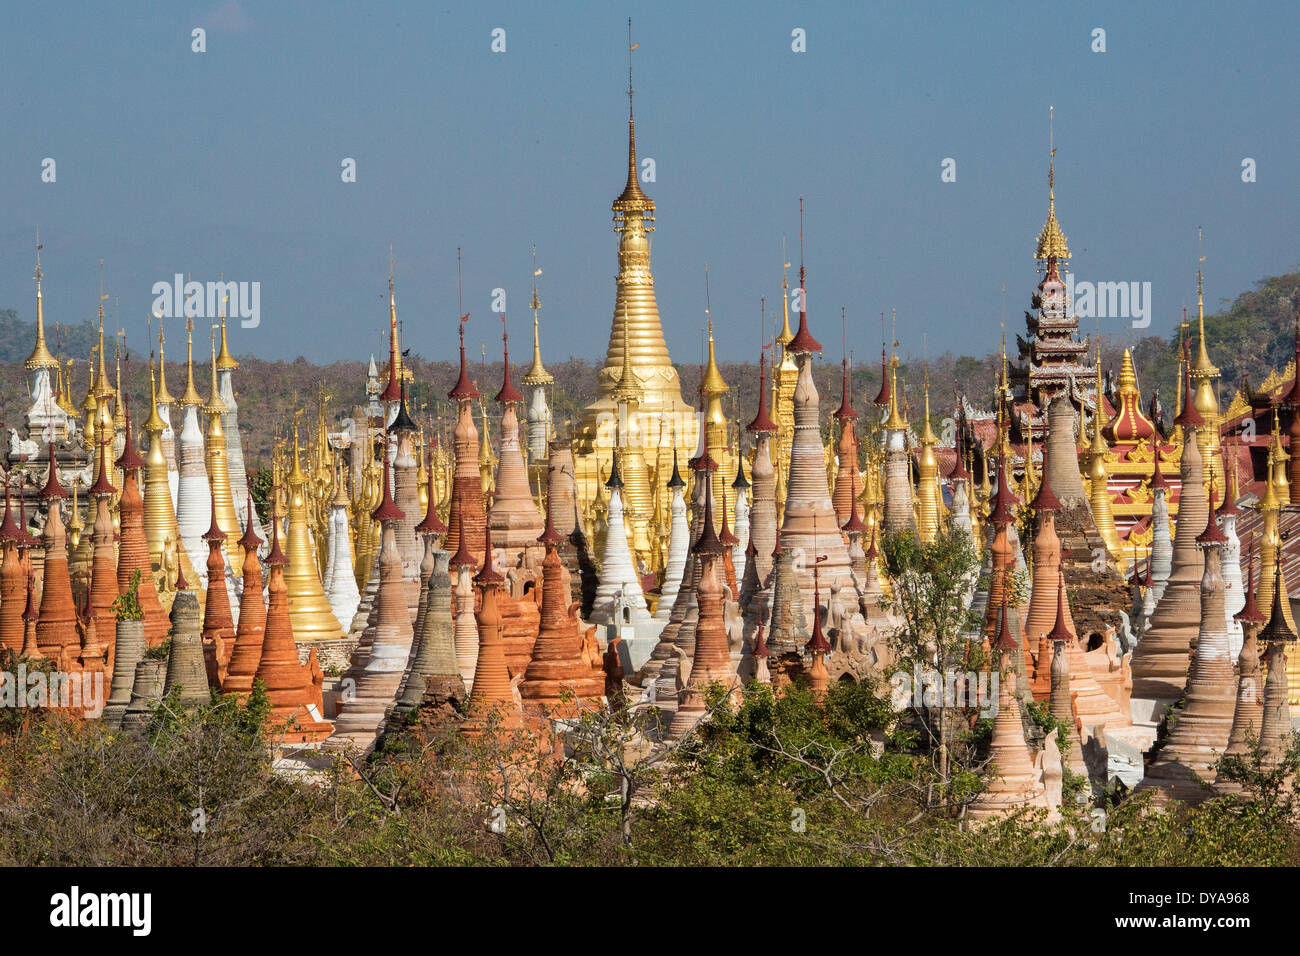 Indeinn Inle Myanmar Burma Asien Architektur bunten exotischen berühmte Geschichte viele natürliche alte Landschaft reichlich abgelegenen Ruine Stockfoto